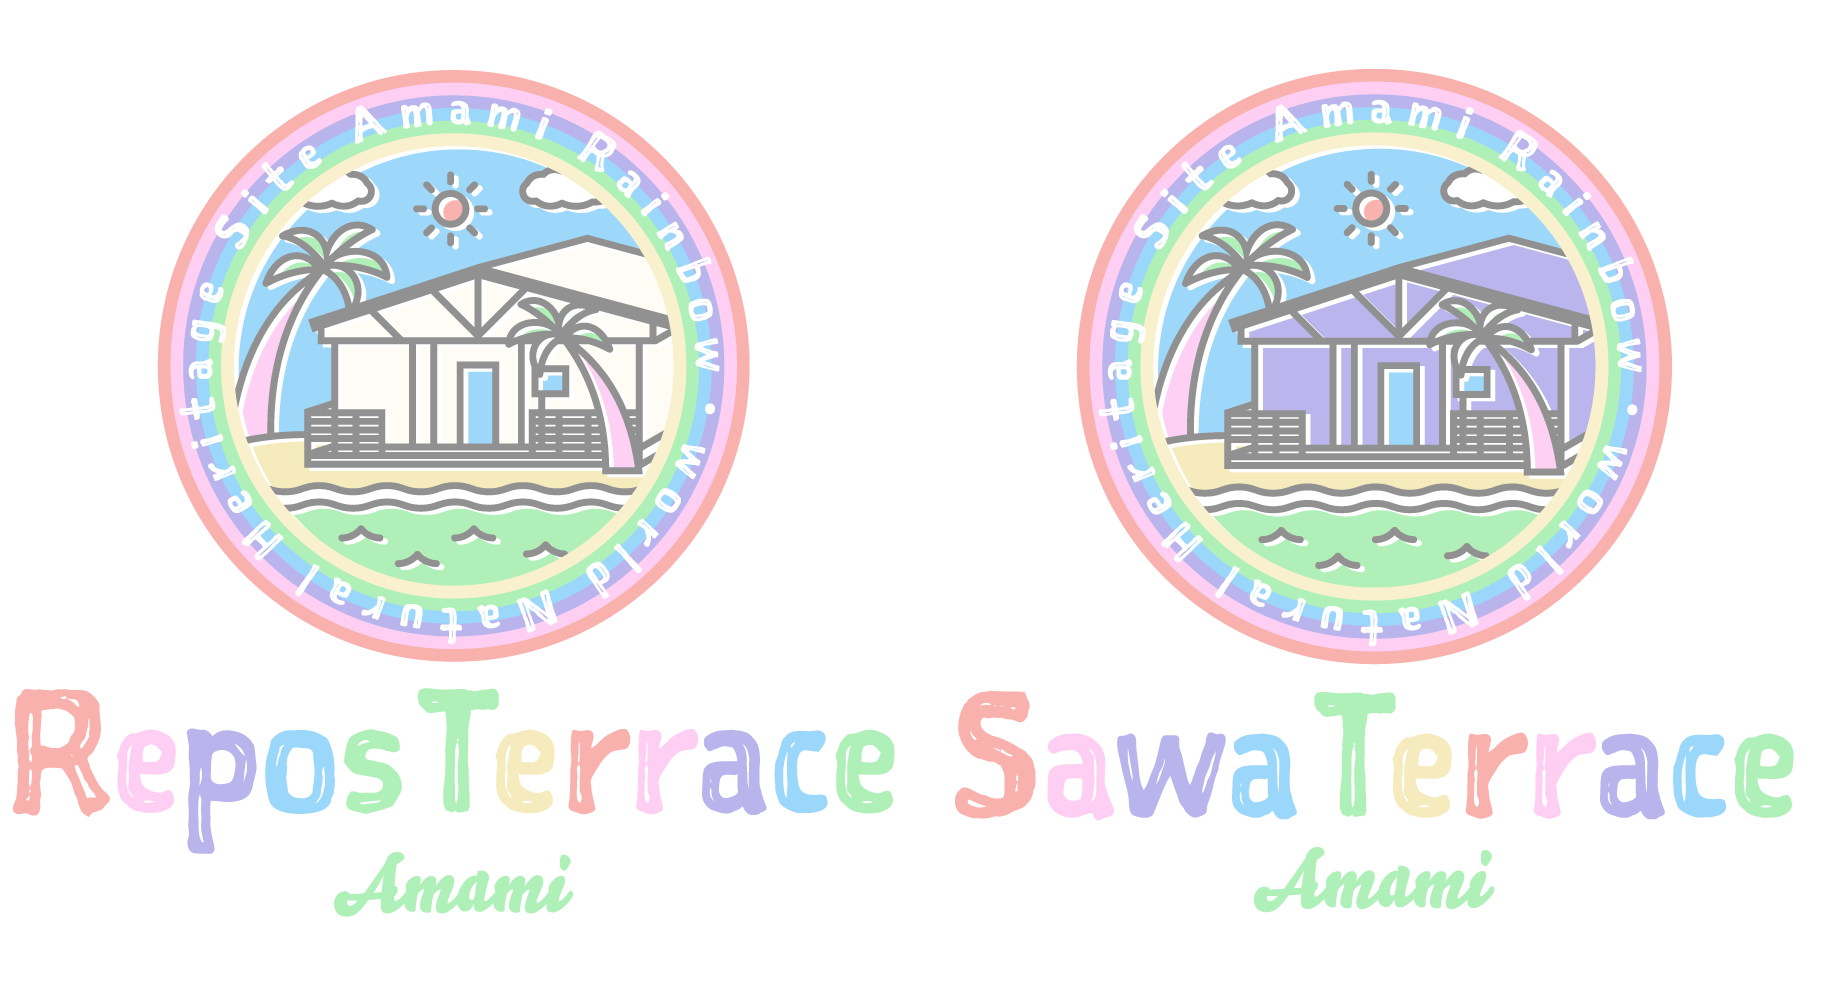 Sawa Terrace & Repos Terraceトップページ